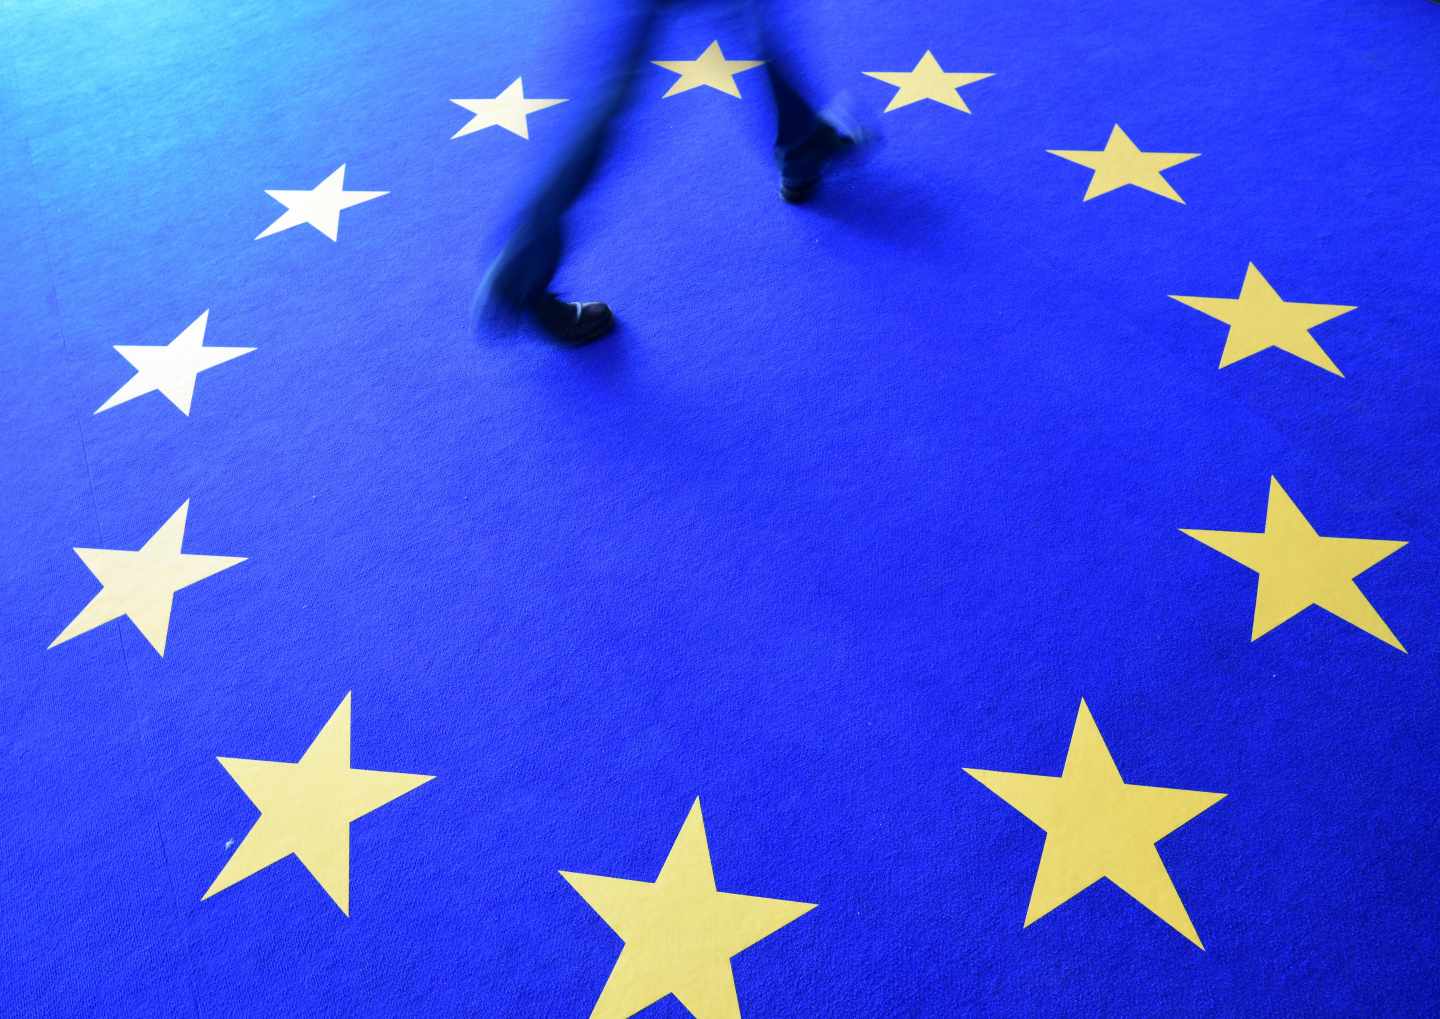 Un hombre pasa por un alfombra con las estrellas de la bandera de la UE.